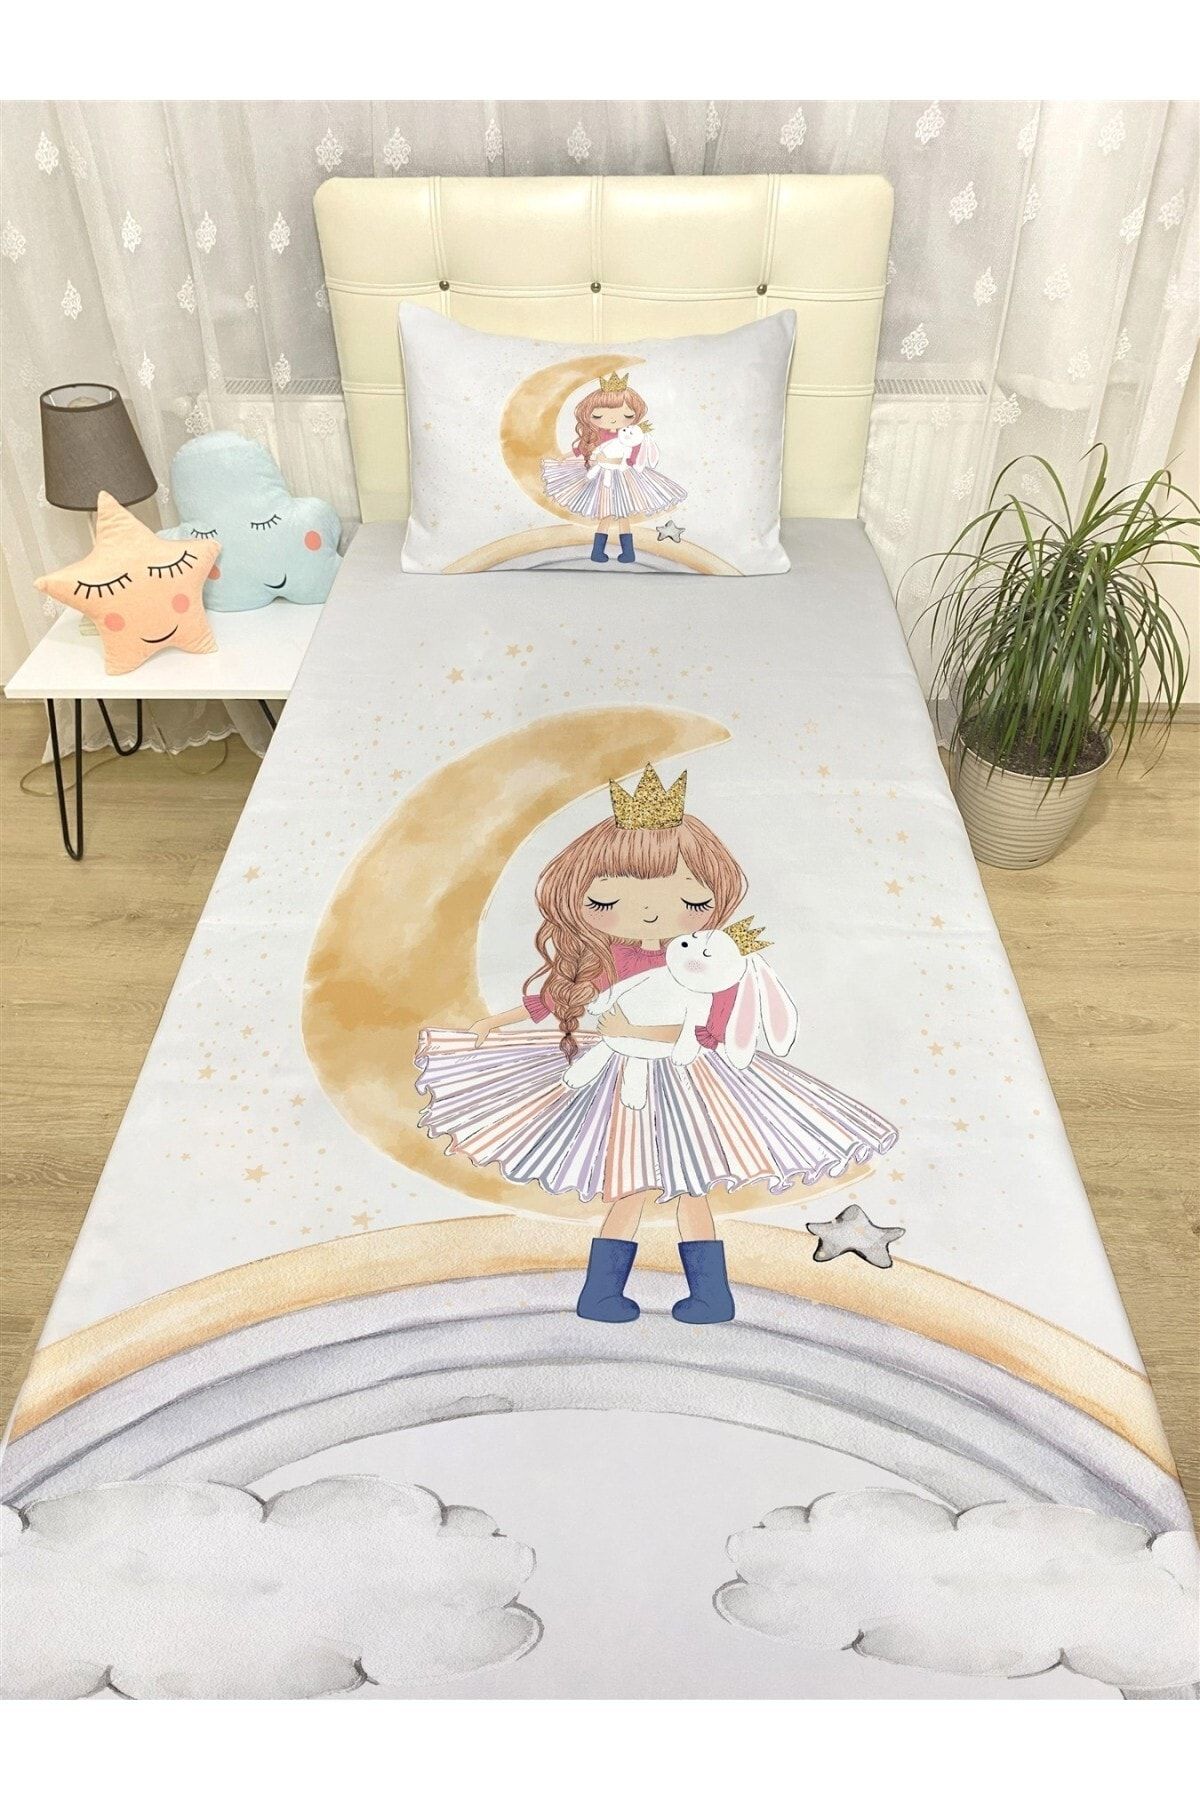 Evpanya Gri Aydaki Tavşanlı Prenses Desenli Yatak Örtüsü Ve Yastık Kılıfı